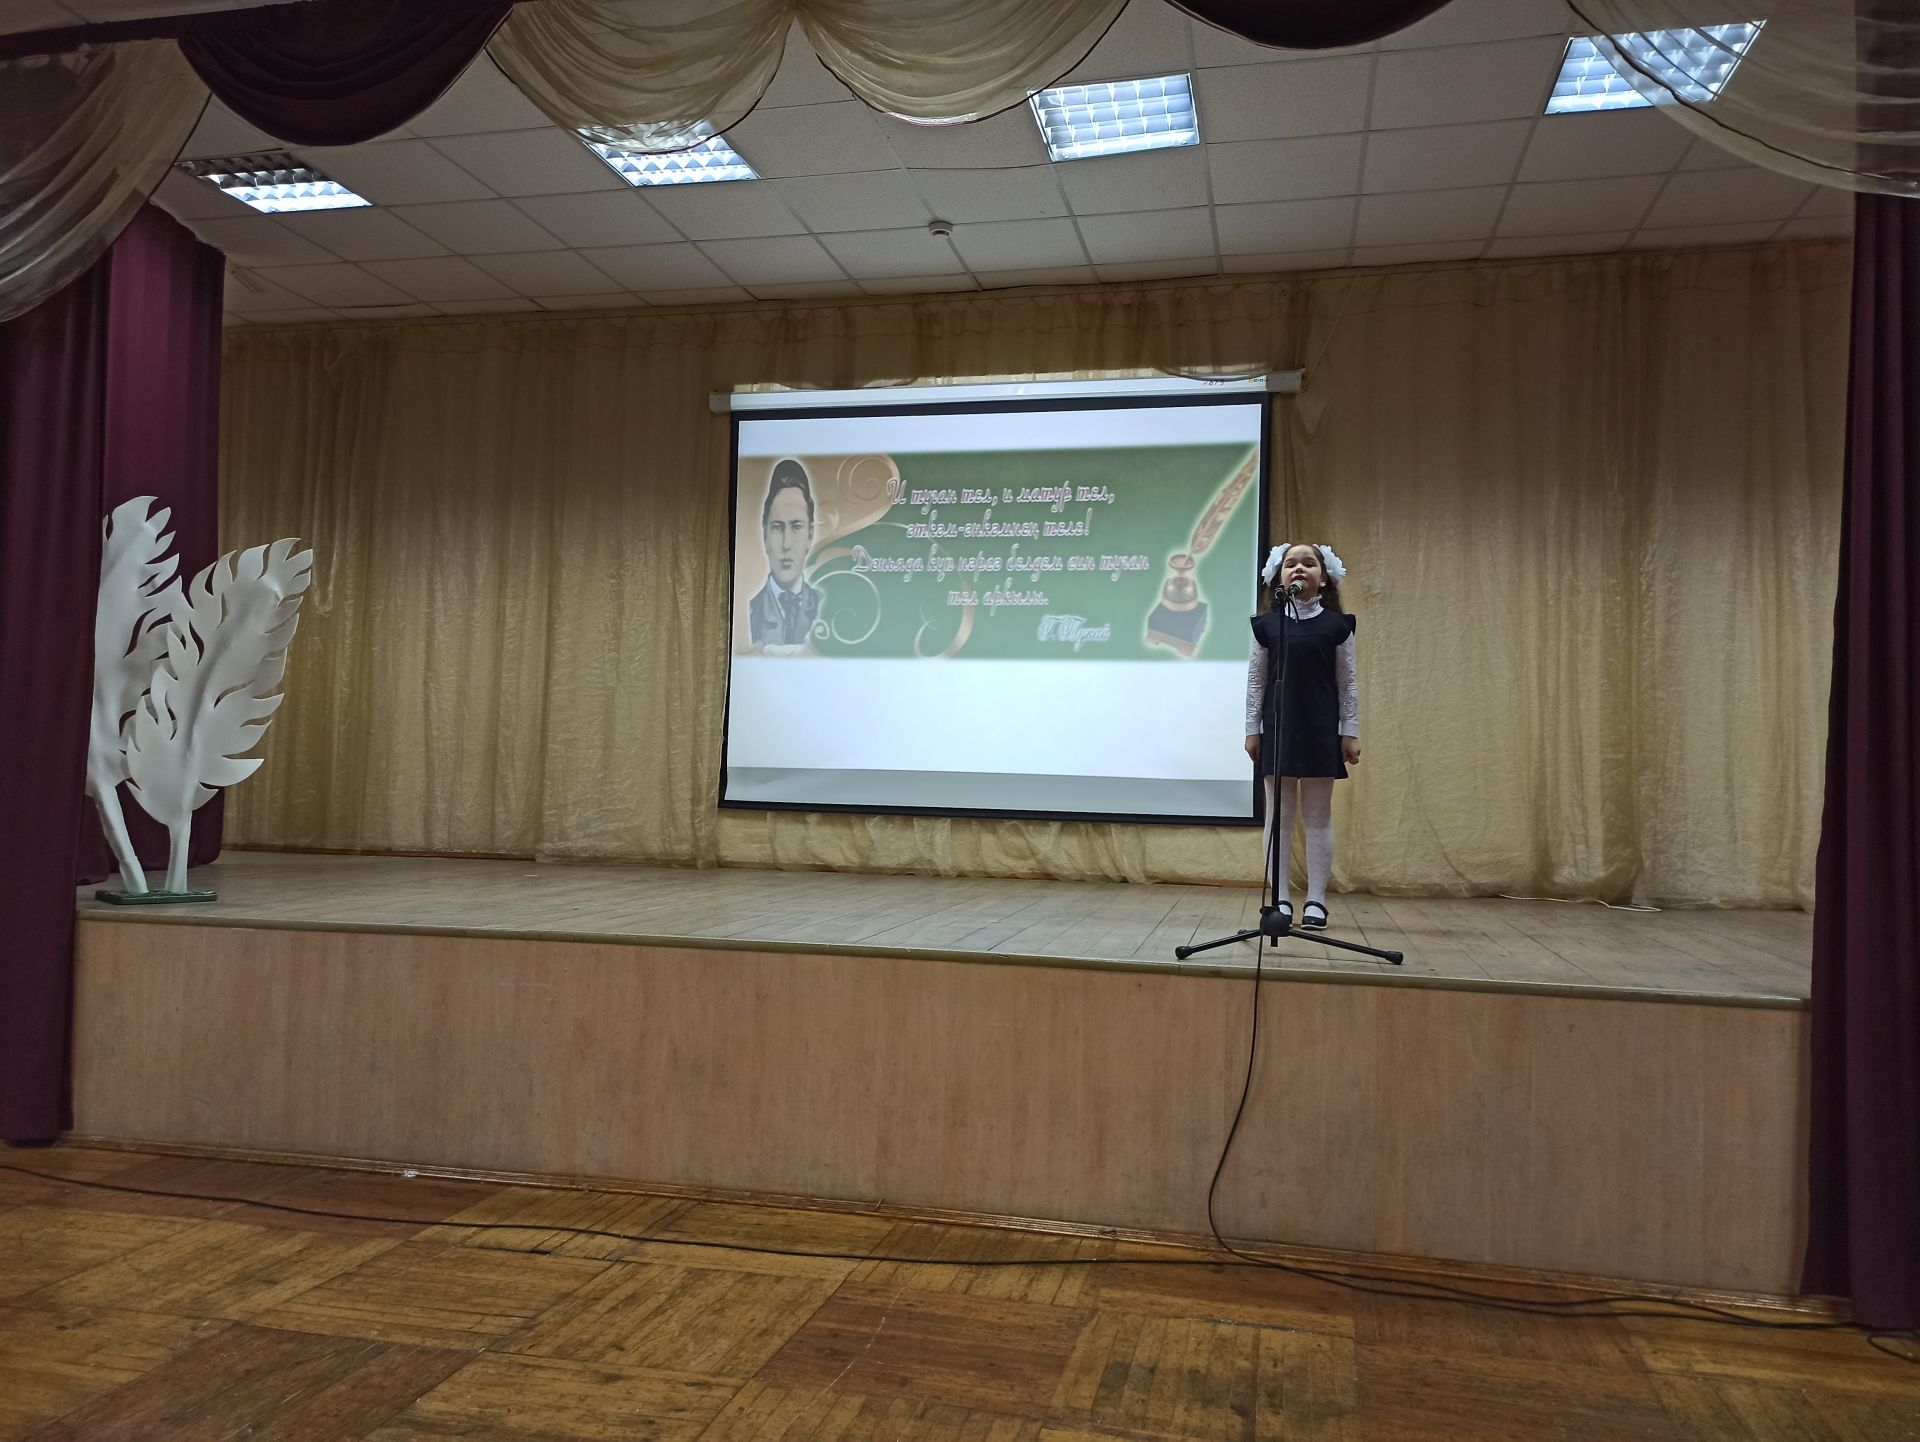 На поэтическом конкурсе чистопольские школьники читали стихи на татарском и русском языках (фоторепортаж)